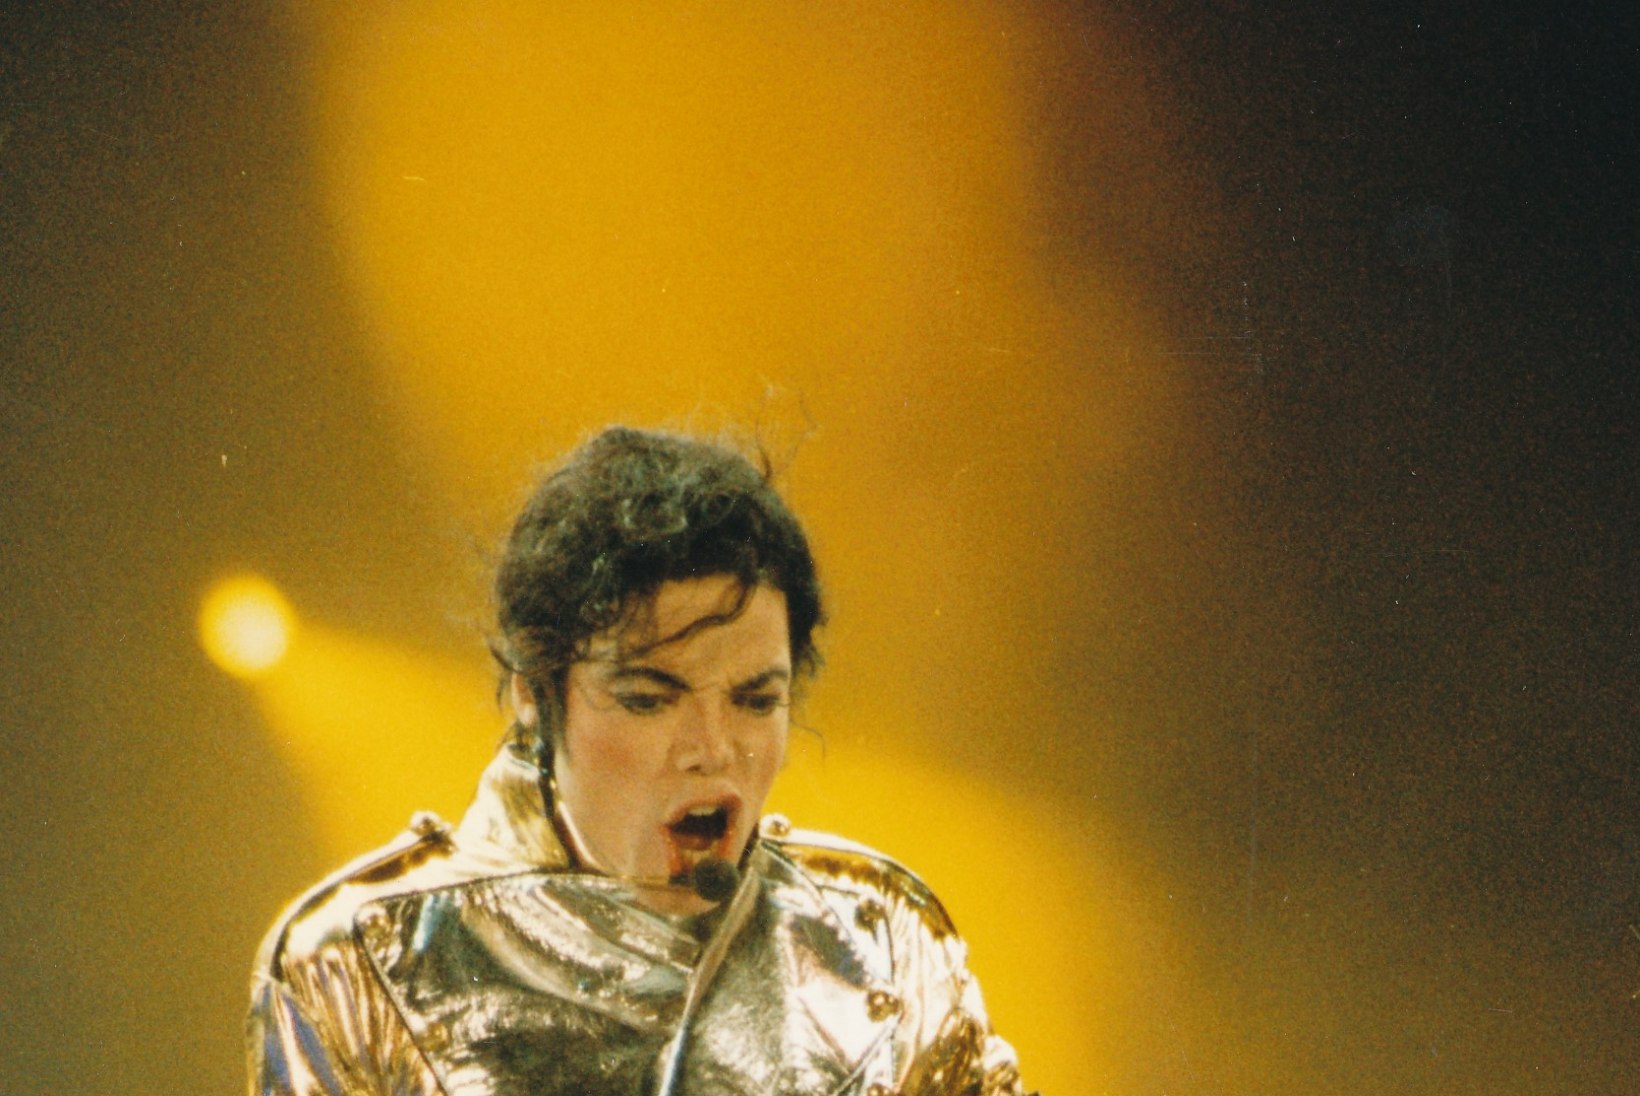 "Michael Jackson oli kõige suurem tükk, mille hammustada võtsime."